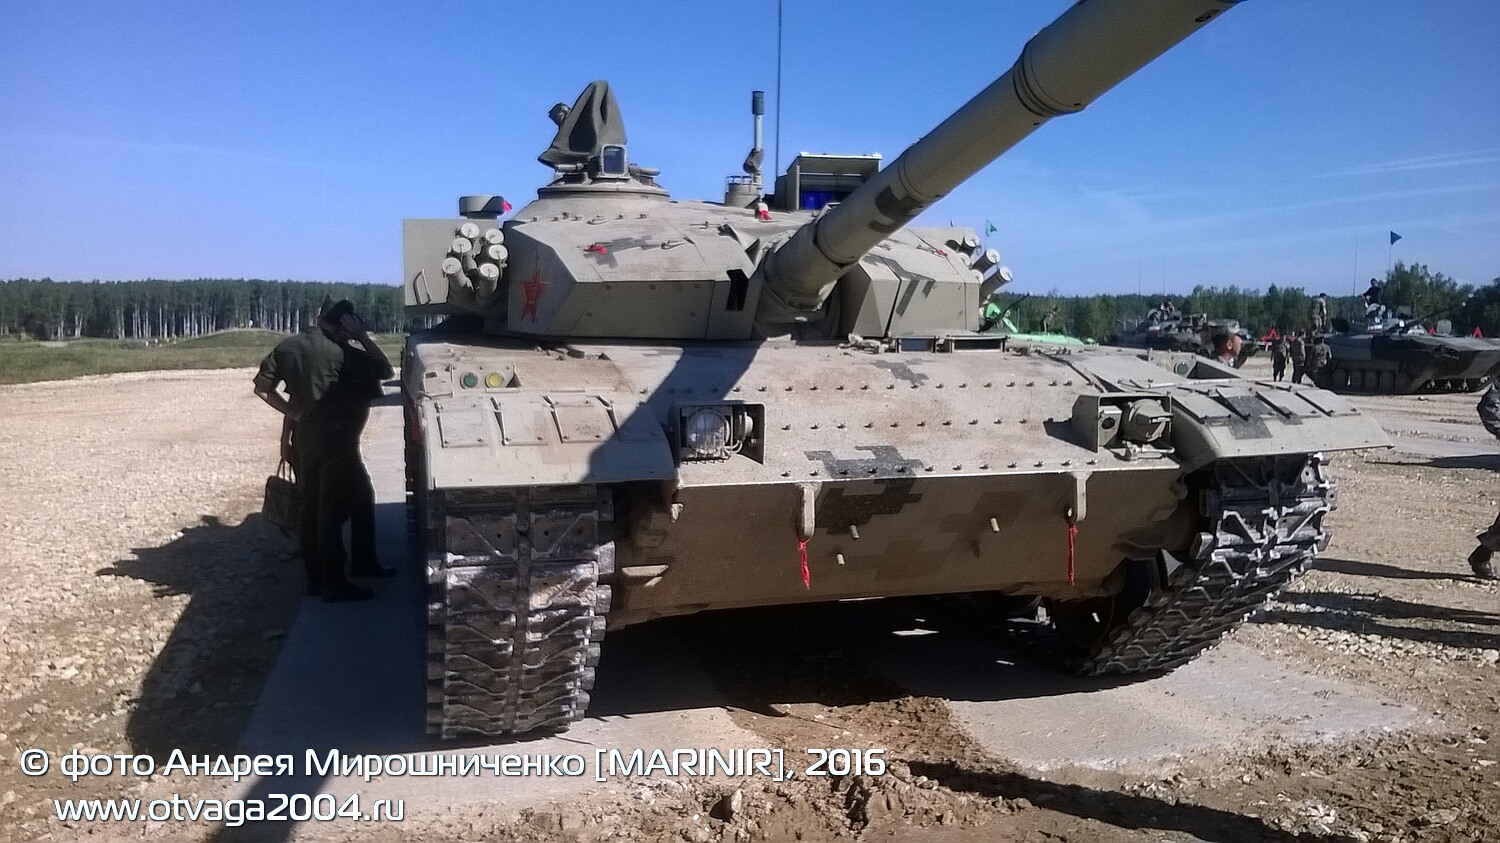 Китайский танк «Тип 96B» на «Танковом биатлоне 2016» - фотообзор